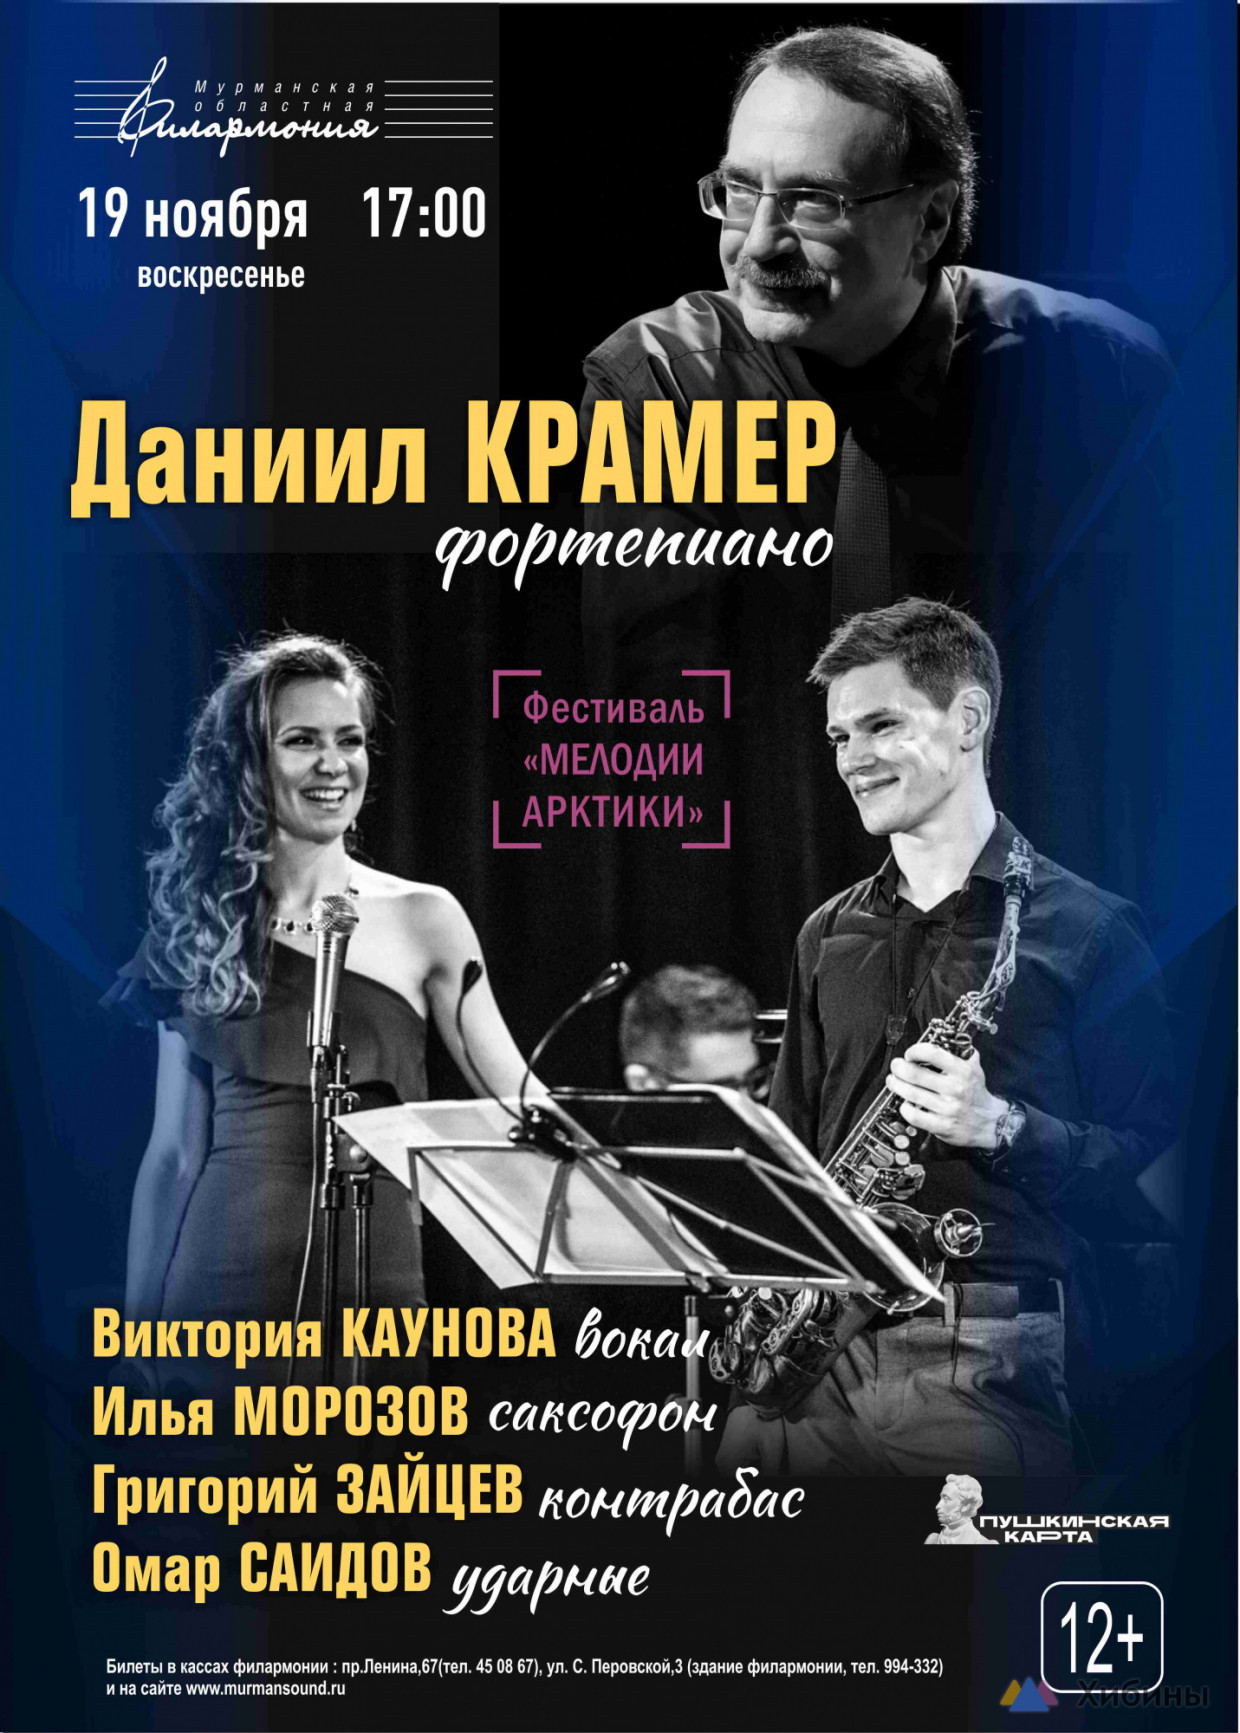 Завтра в Мурманске пройдет концерт «Джазовый квинтет п/у Даниила Крамера»